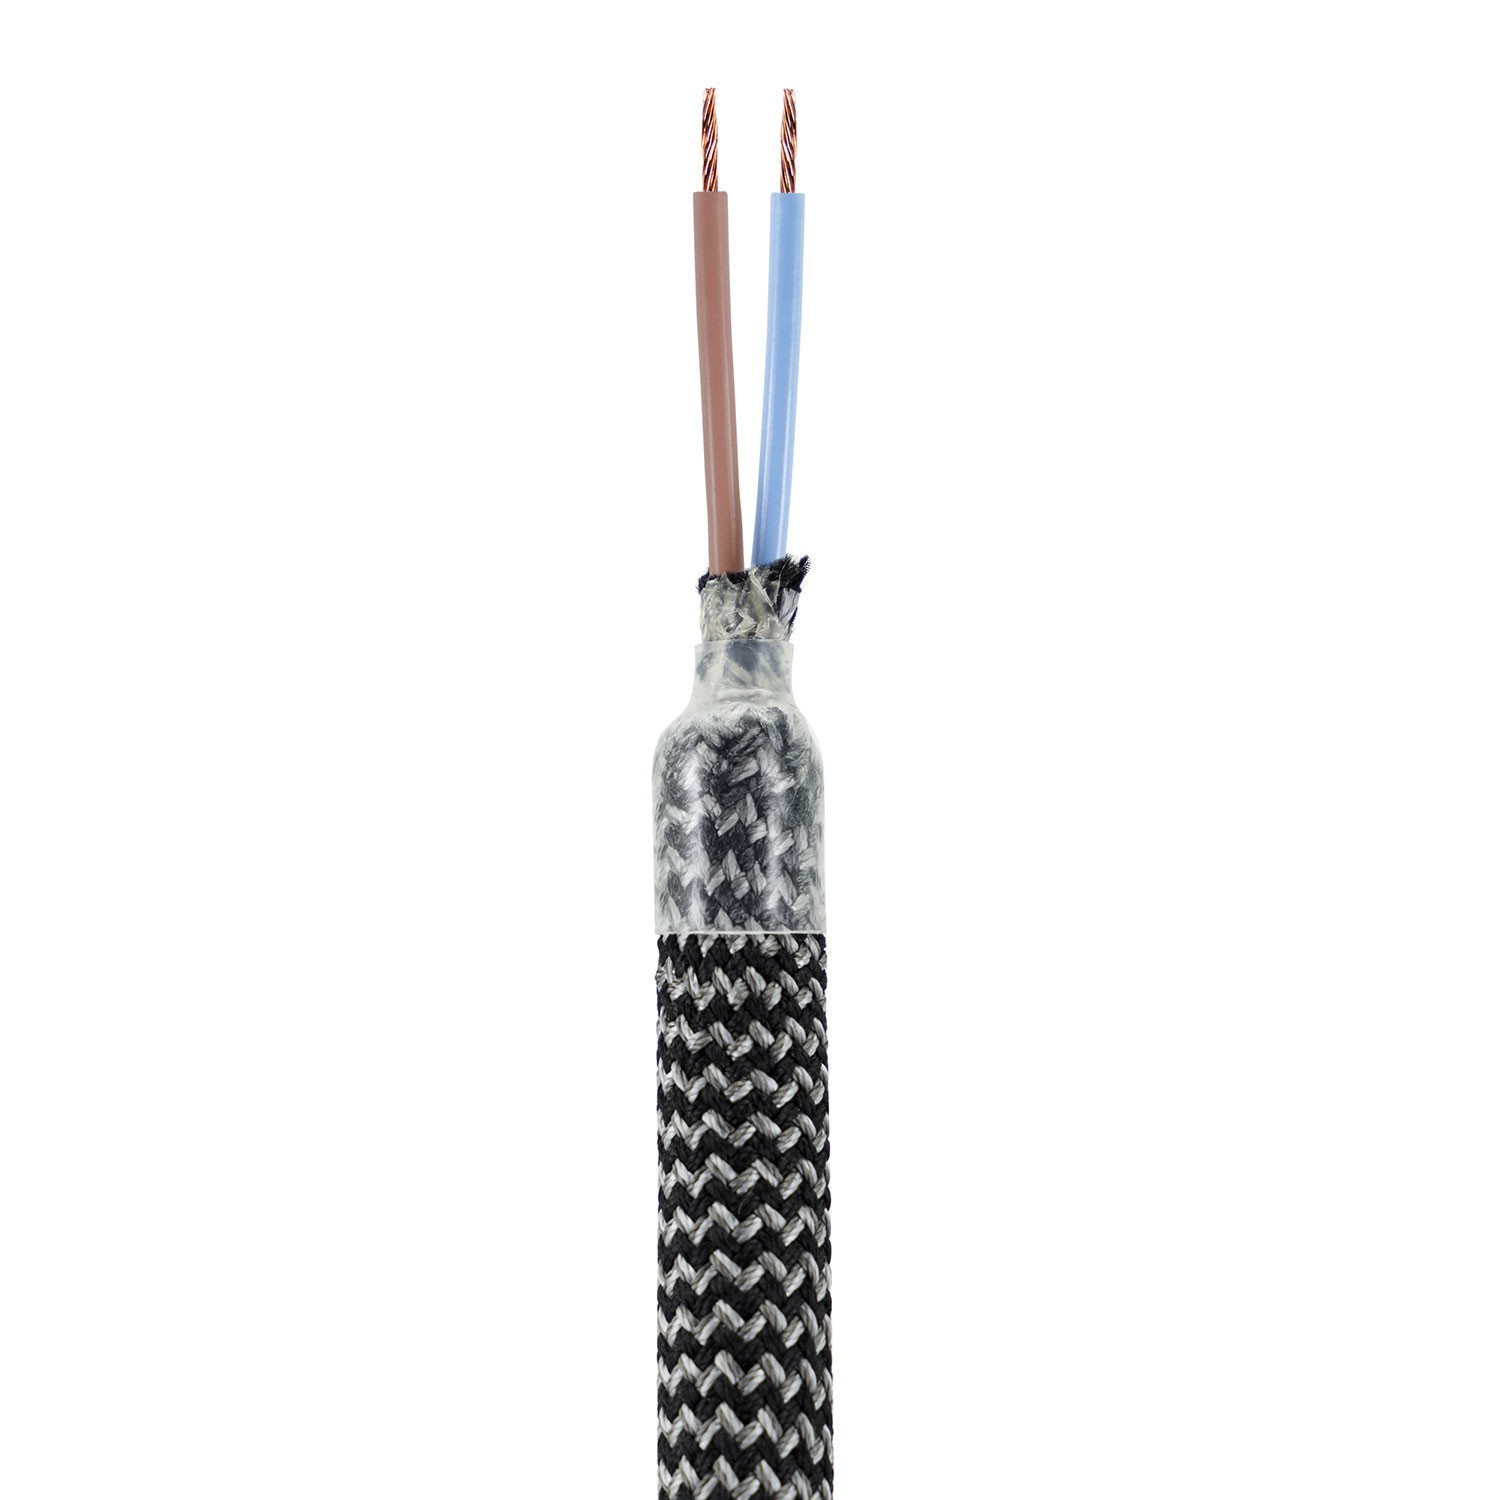 Kit Creative Flex flexibele buis bekleed met zwart zigzag RZ30 stof met metalen eindstukken